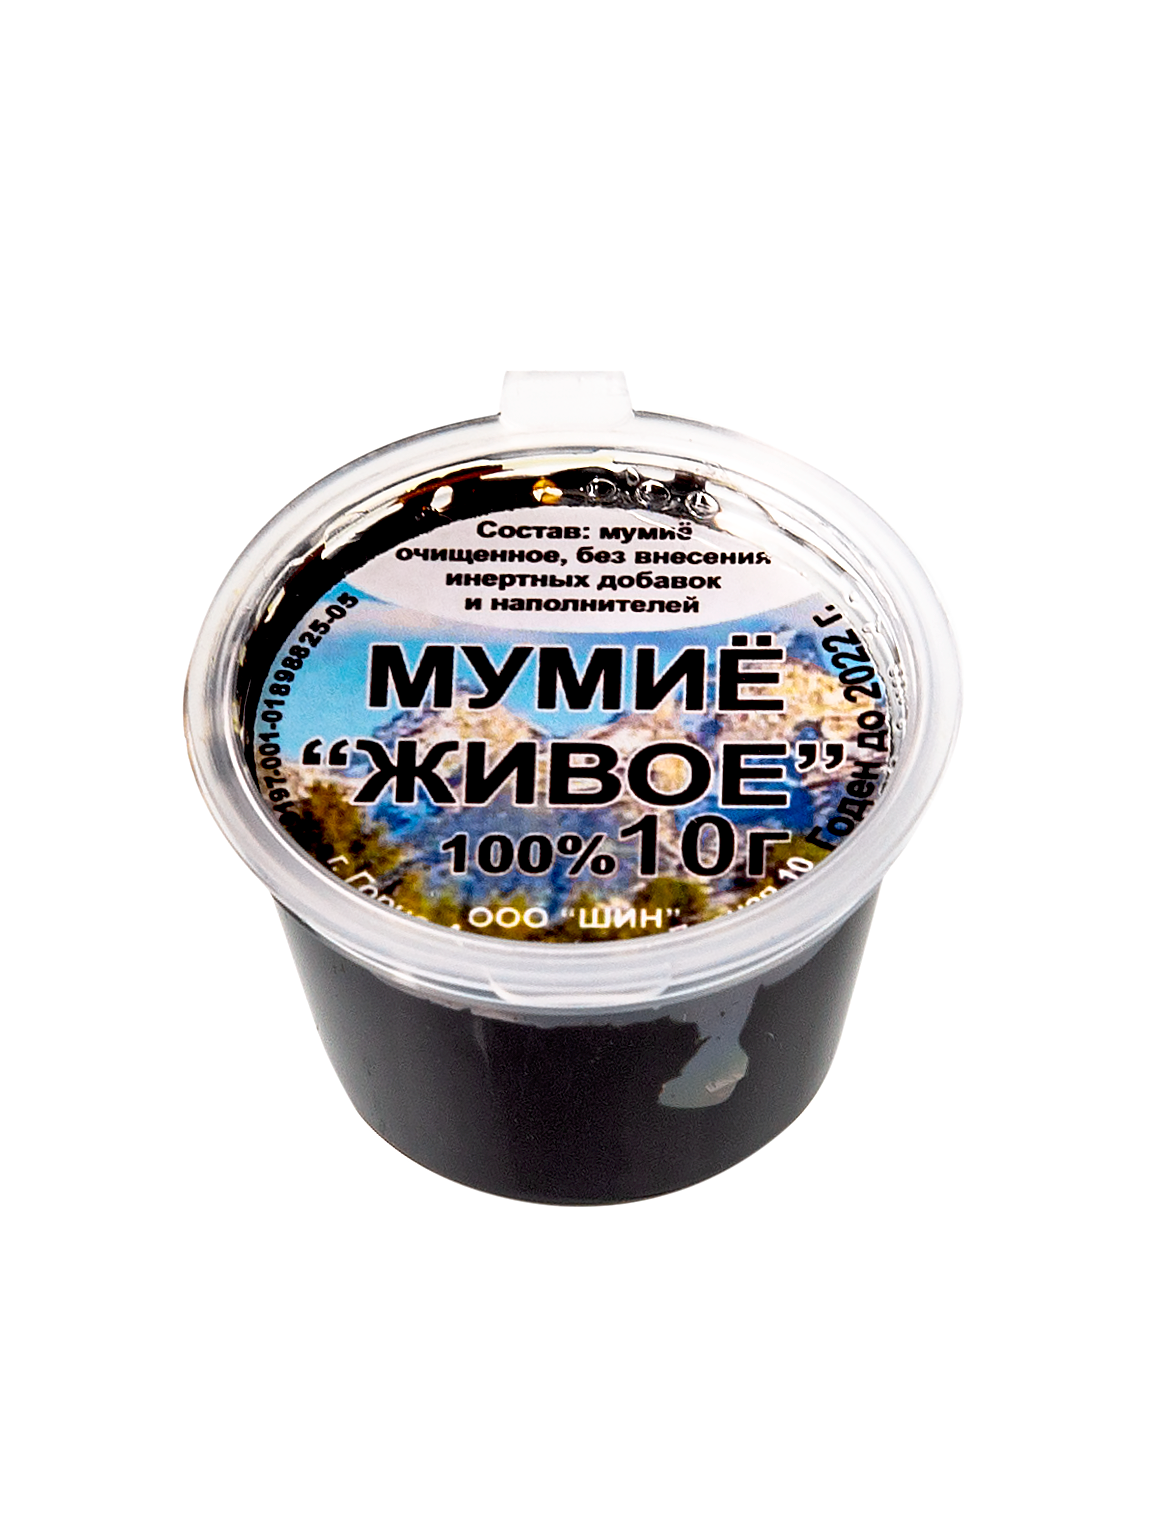 Мумиё Алтайское без добавок в Санкт-Петербурге